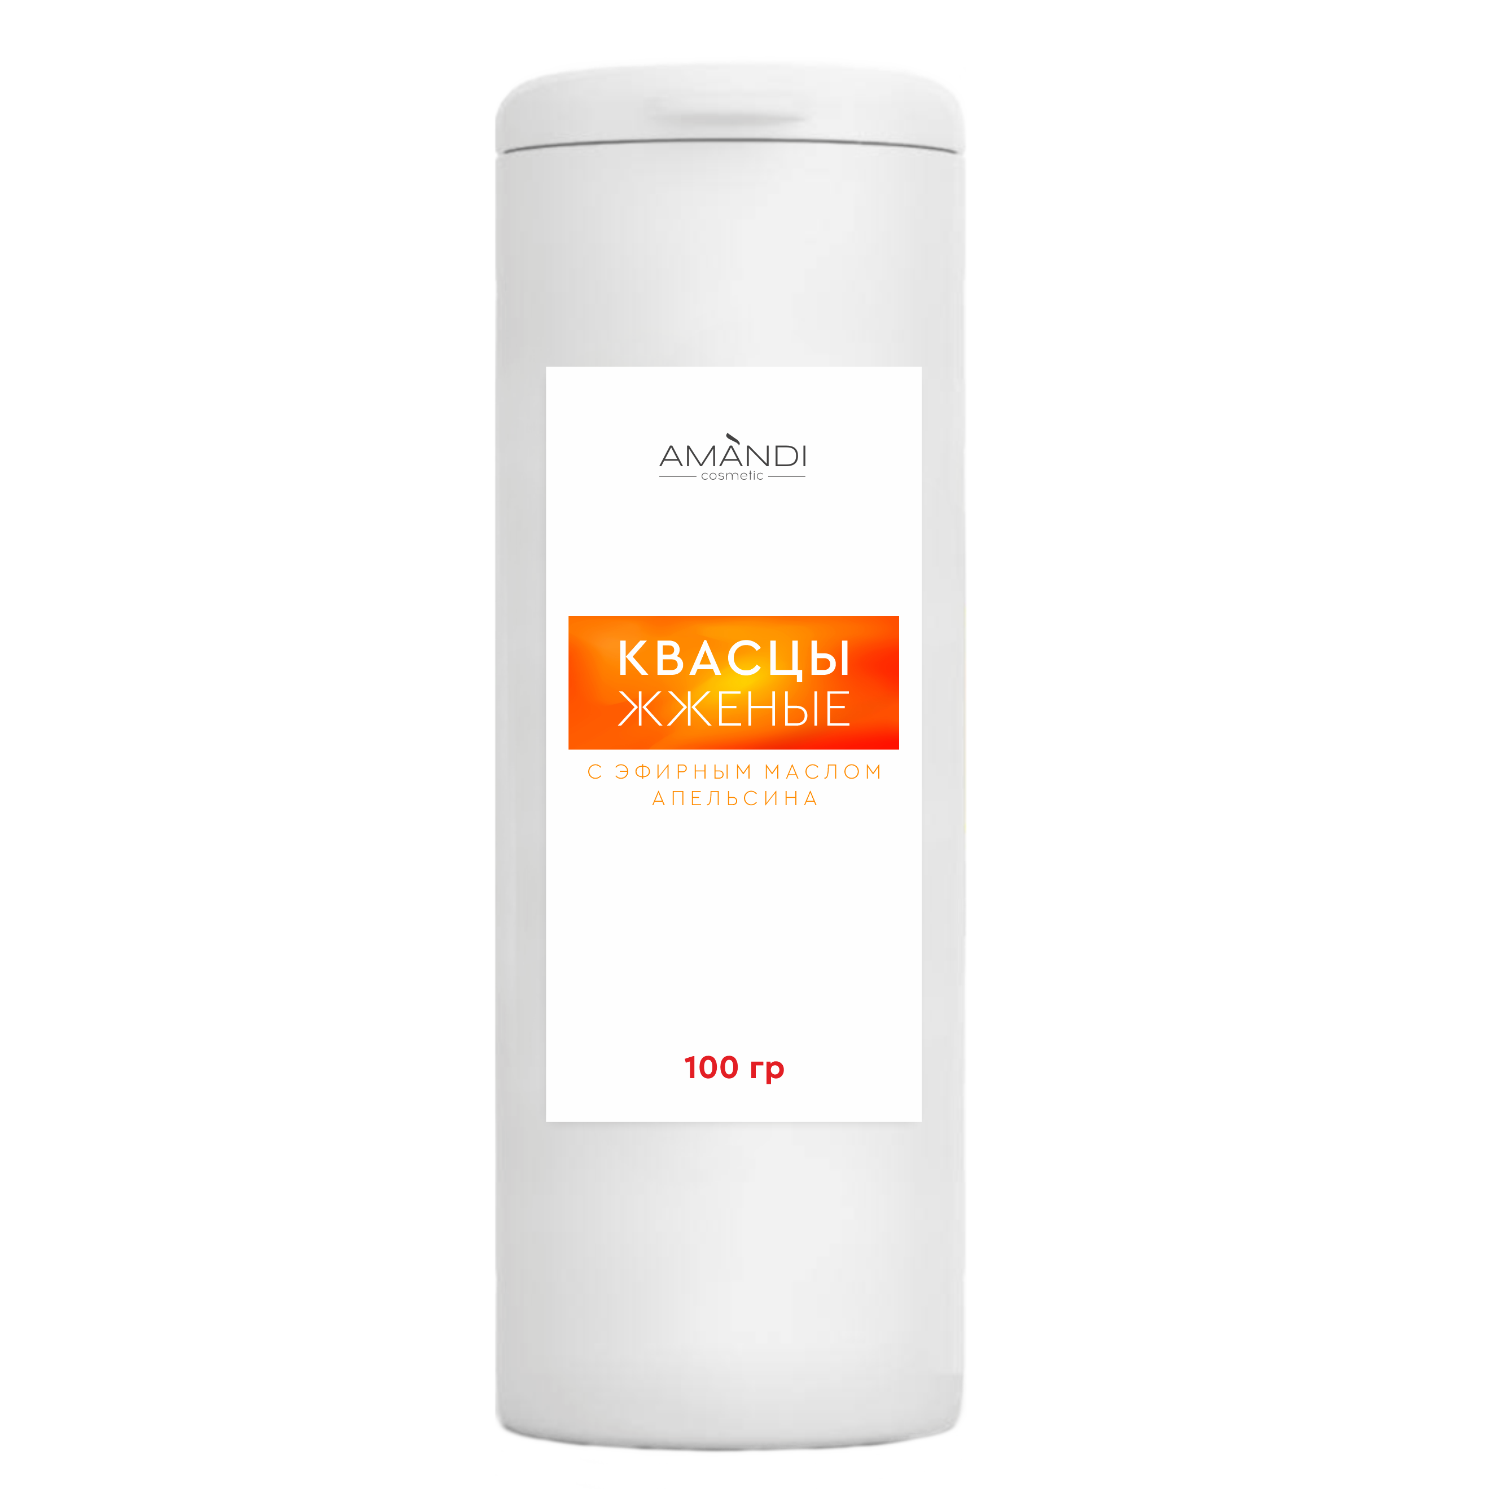 Сухой дезодорант квасцы жженые AMANDI с эфирным маслом апельсина 100 грамм - фото 1